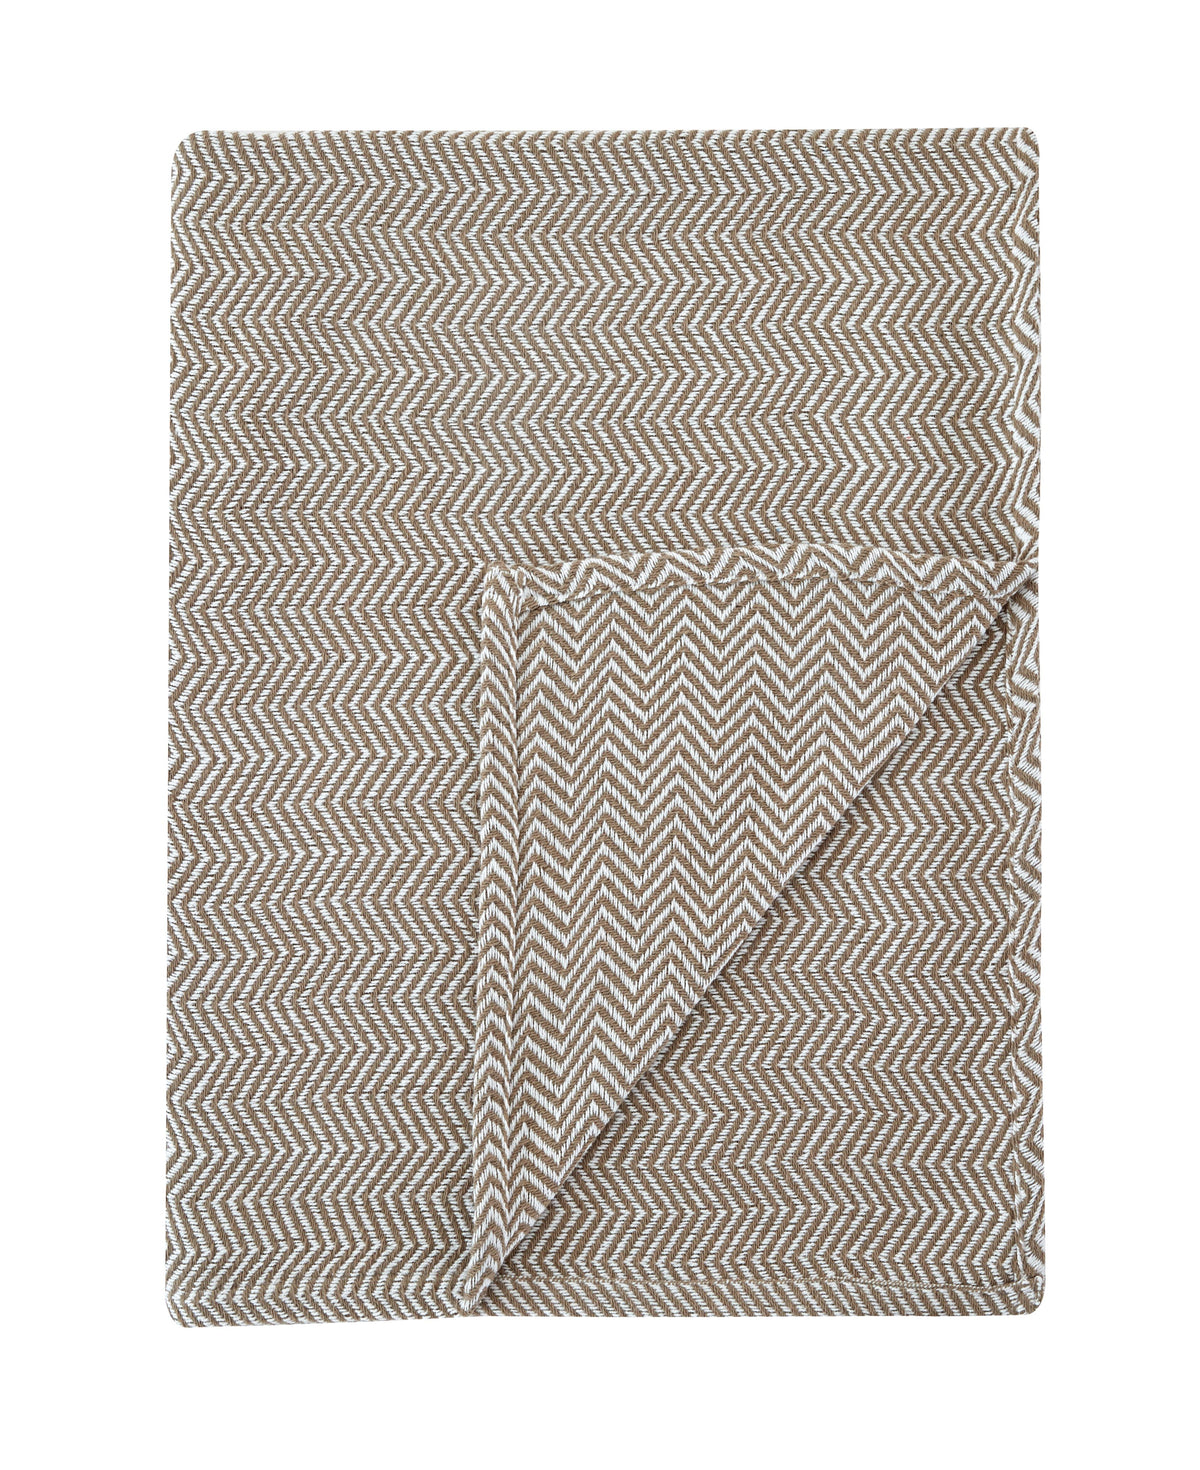 Herringbone Cotton Blanket – Laytner's Linen & Home